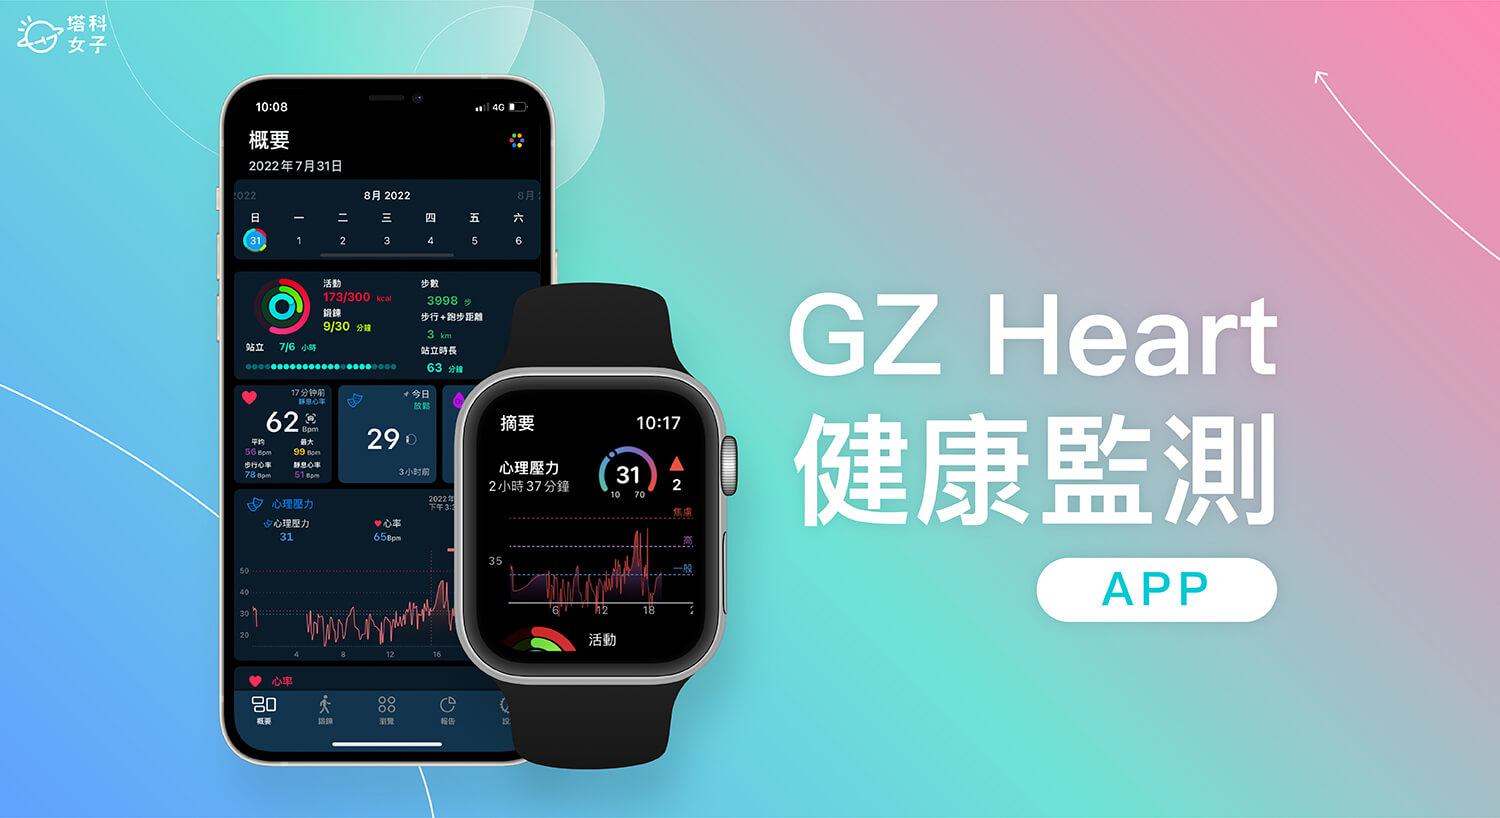 Apple Watch 健康監測 App《GZ Heart》即時監控心率/血氧/HRV 並推估心理壓力狀態